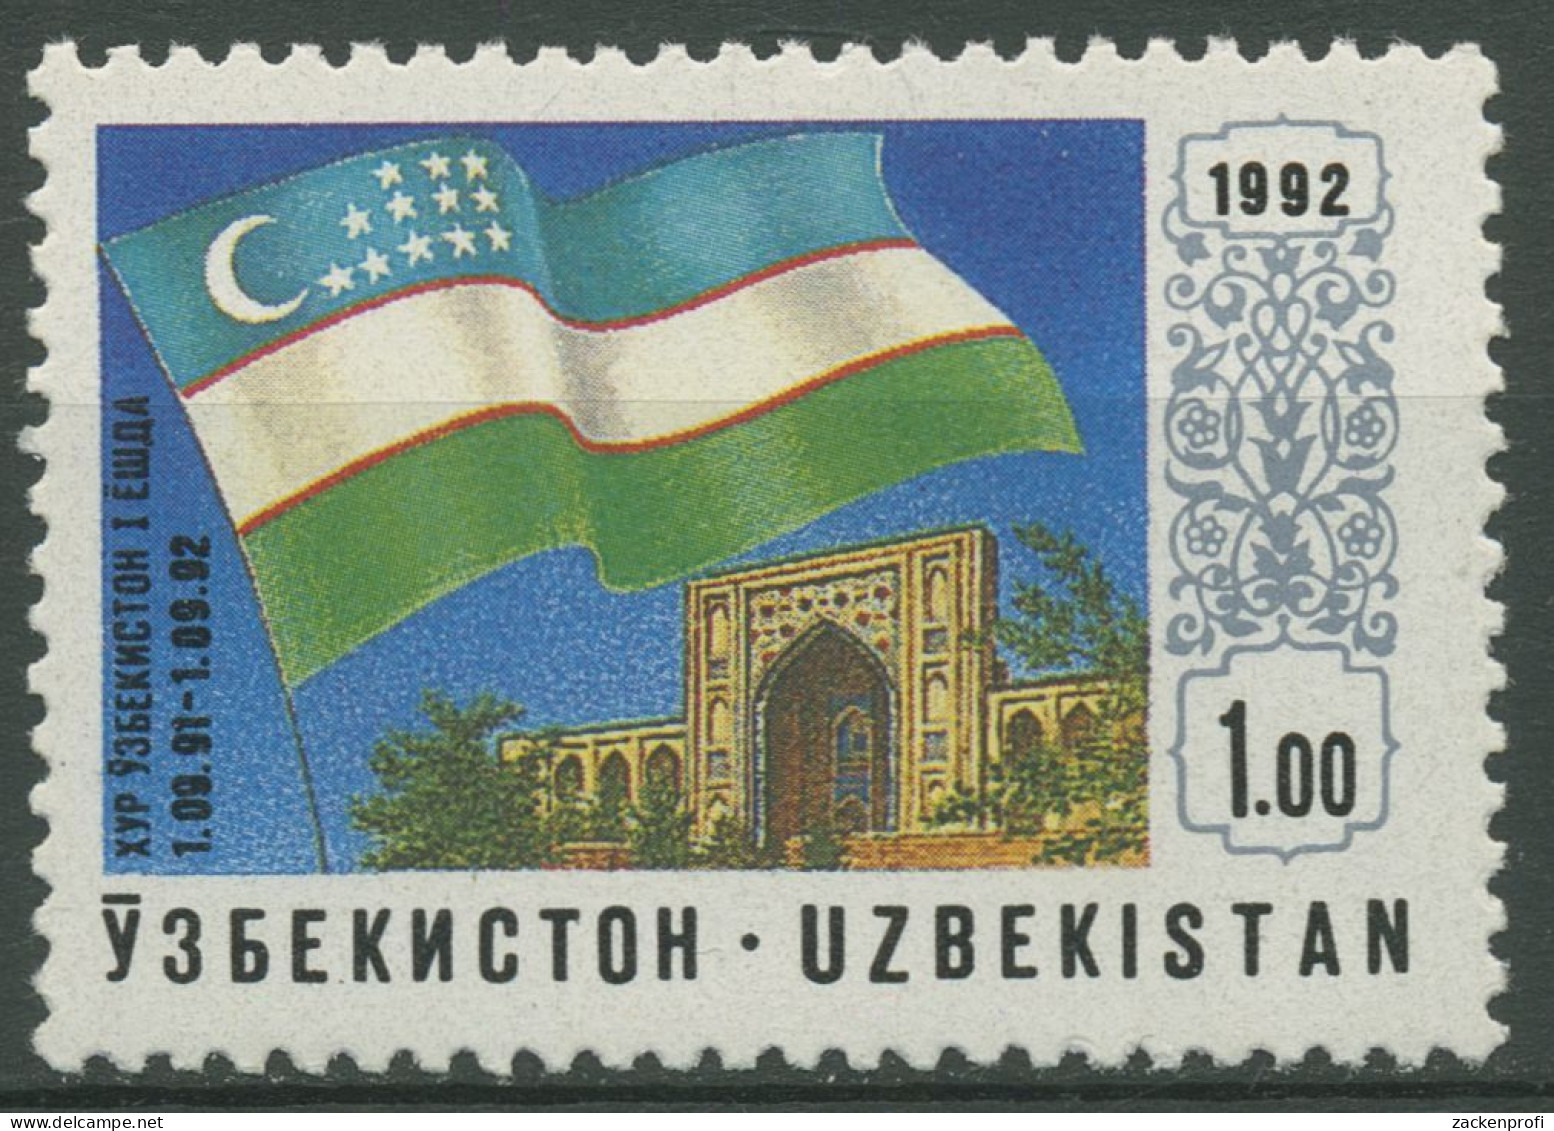 Usbekistan 1992 Unabhängigkeit Flagge 3 Postfrisch - Ouzbékistan